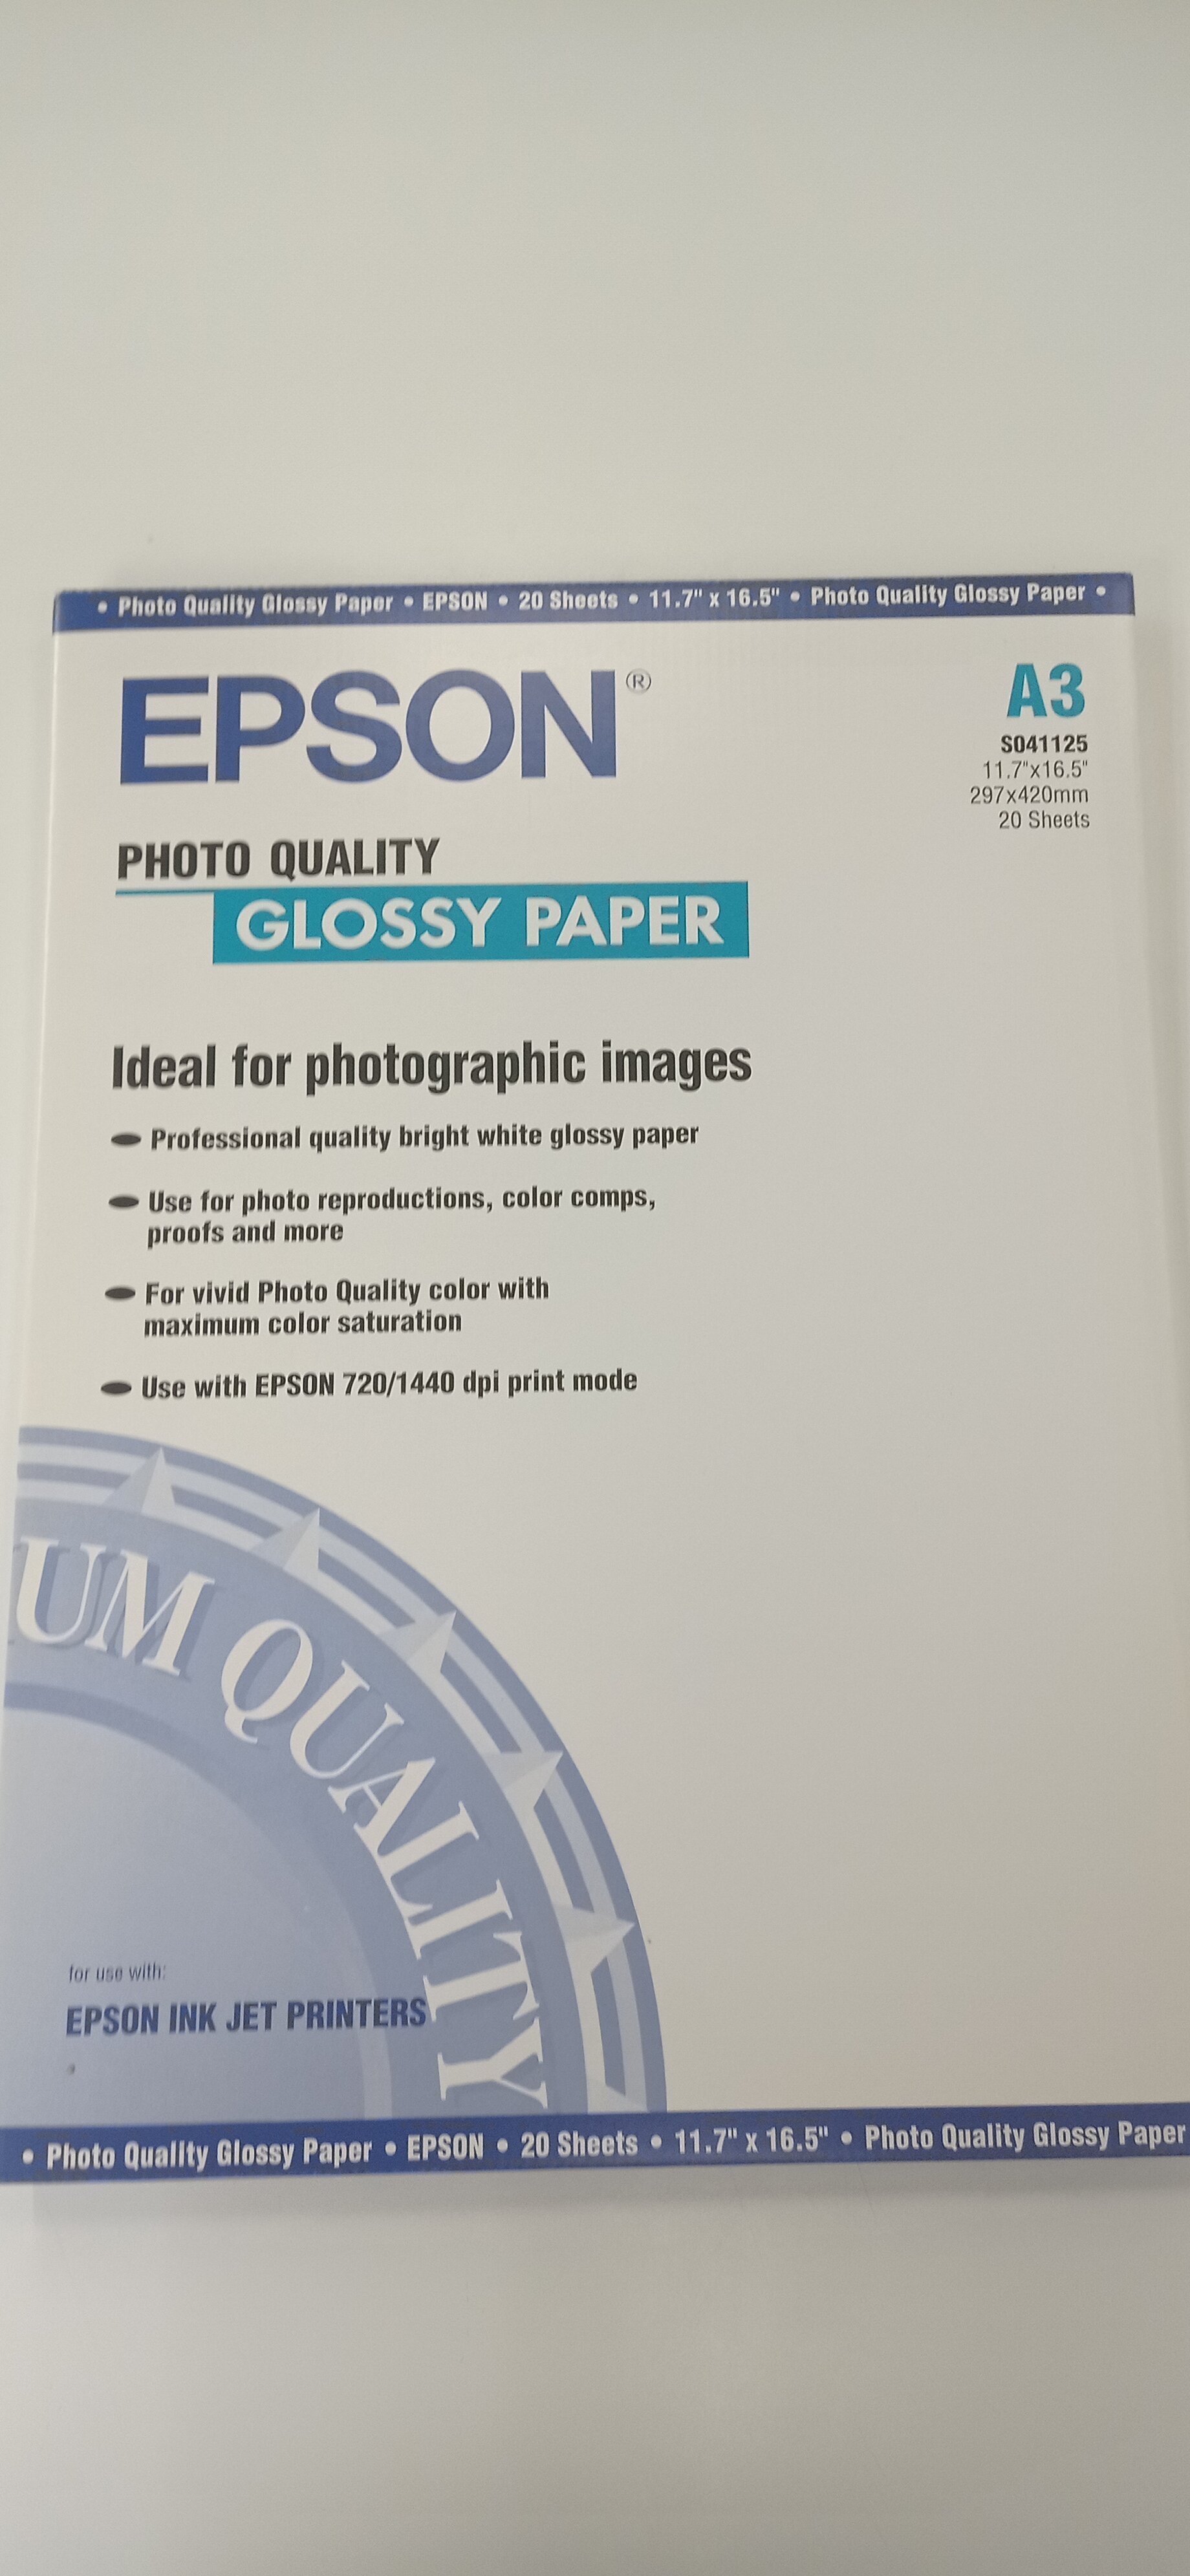 Бумага Epson C13S041125 (Photo Quality Glossy Paper) глянцевая. Формат А3, плотность 147 г/м2, в пачке 20 листов.